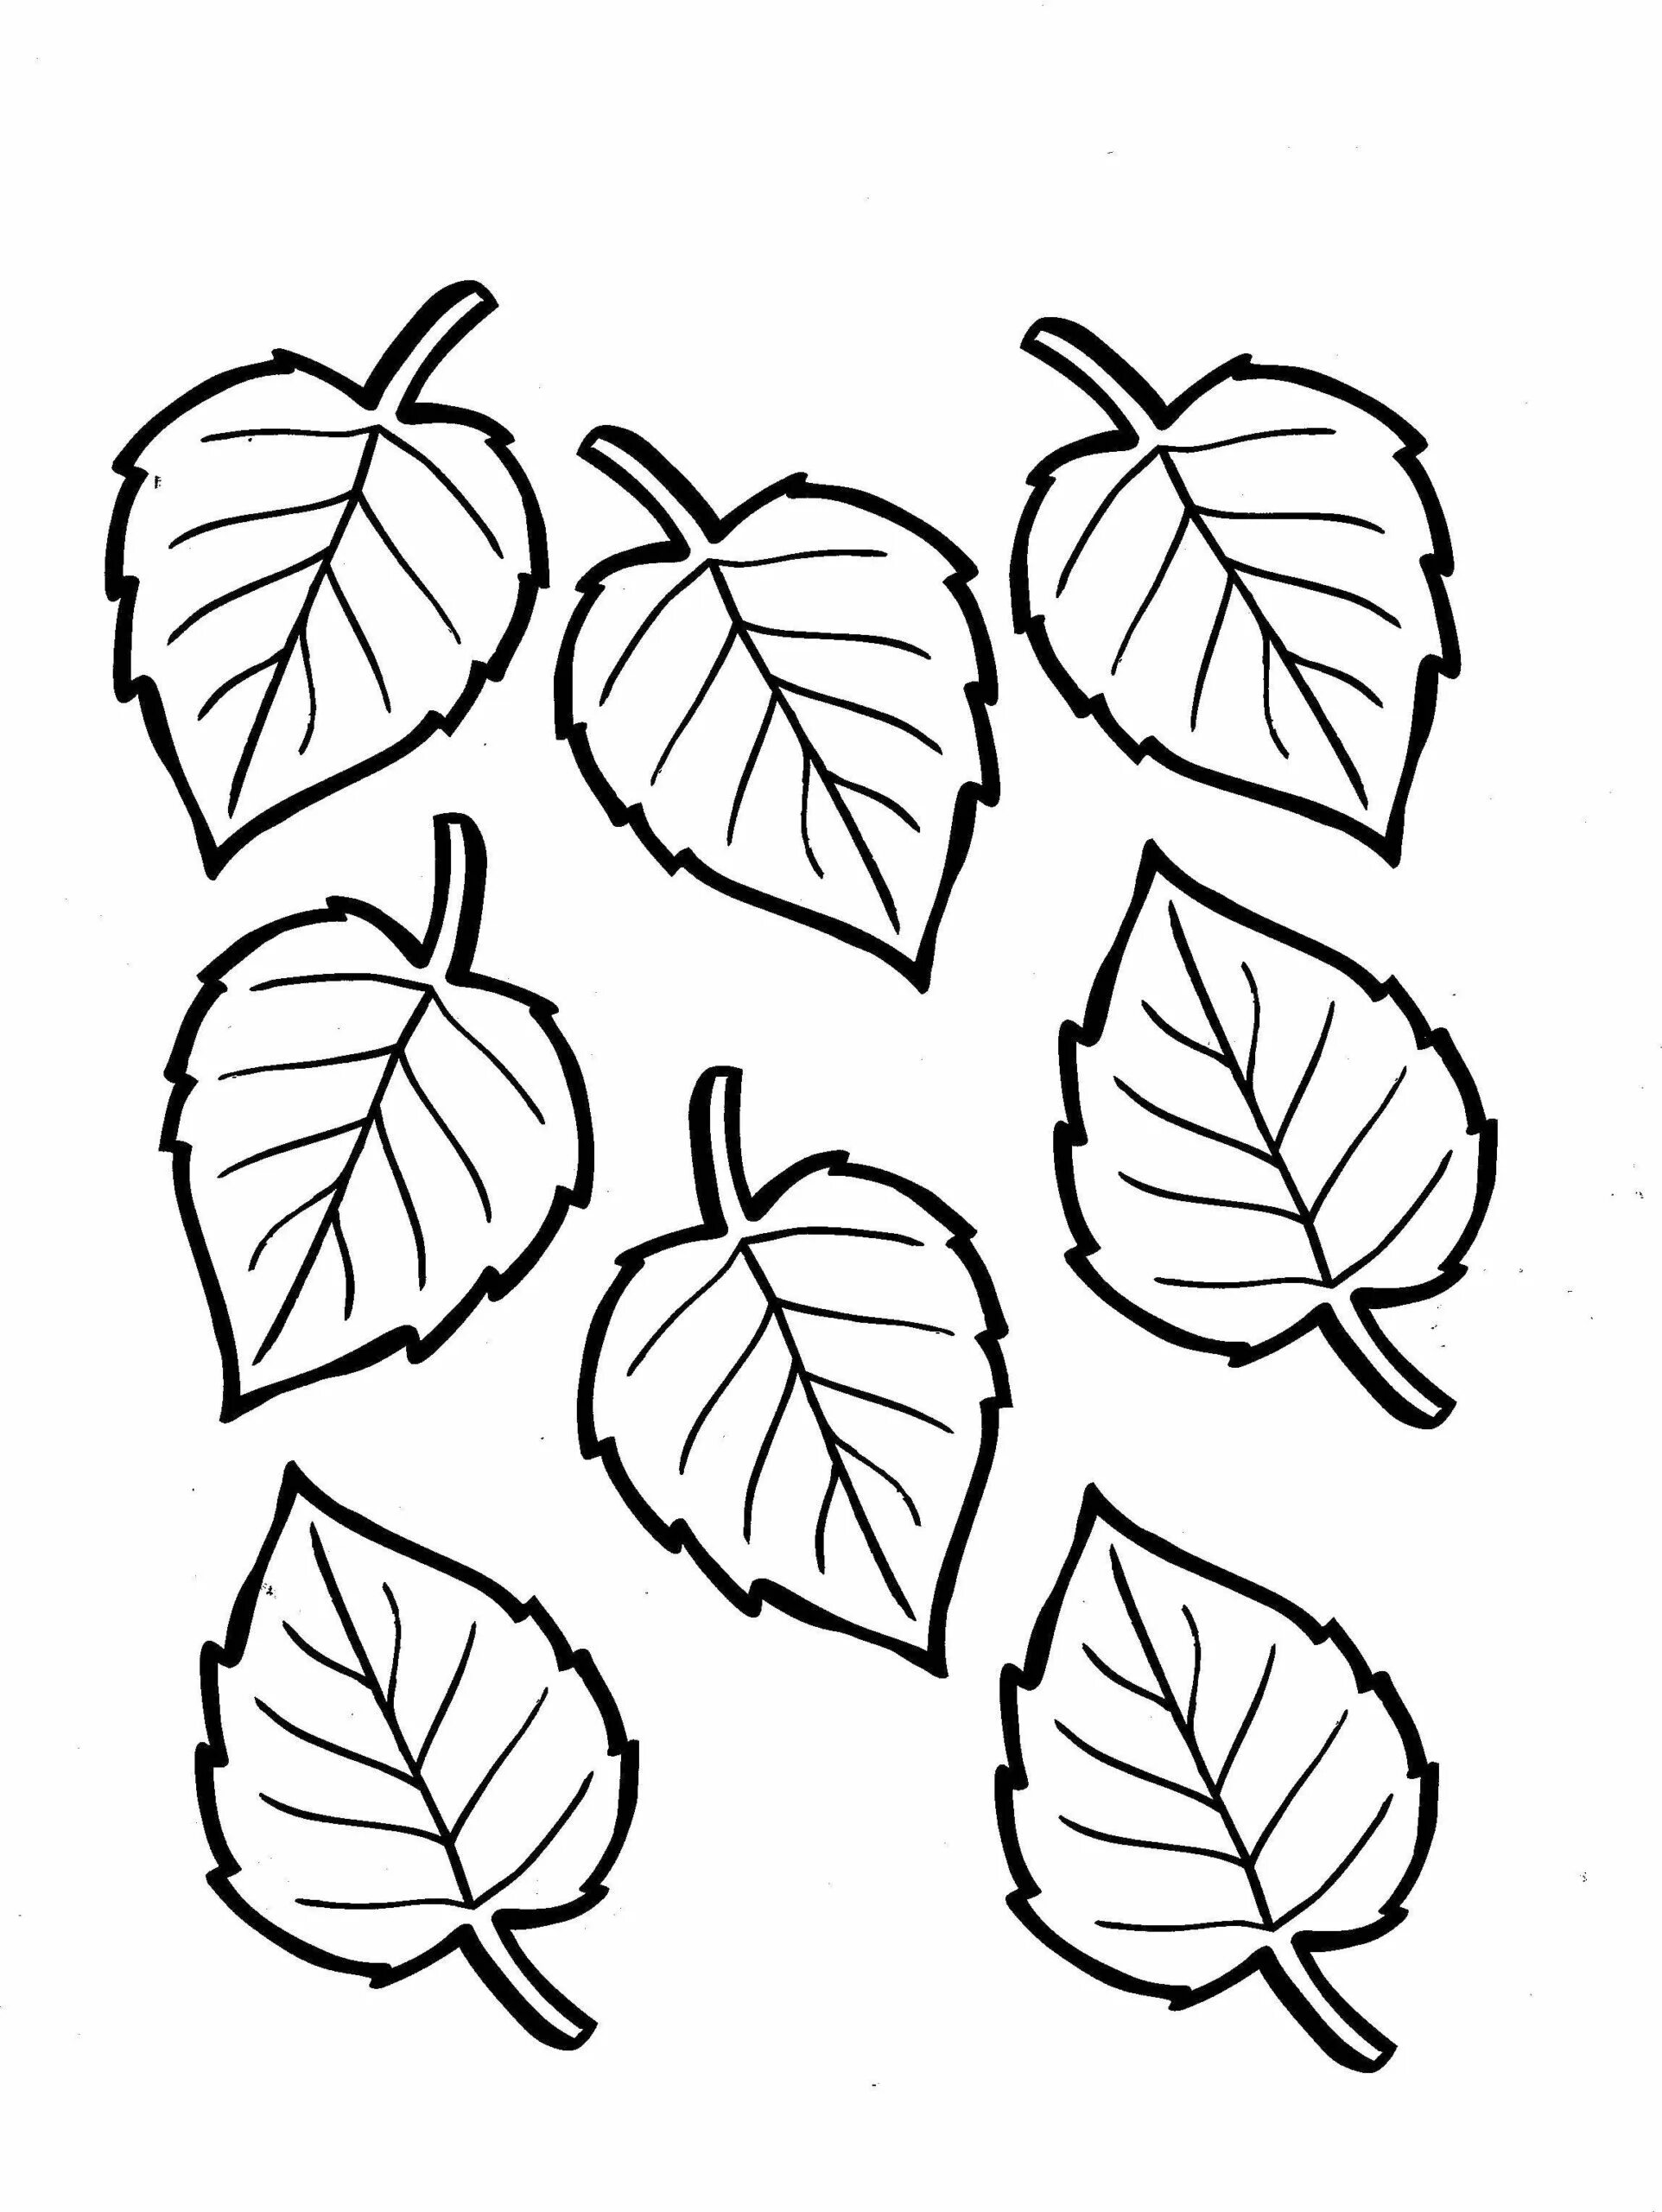 Лист березы раскраска. Листья раскраска. Листья раскраска для детей. Листья деревьев раскраска. Раскраски листьев деревьев для детей.